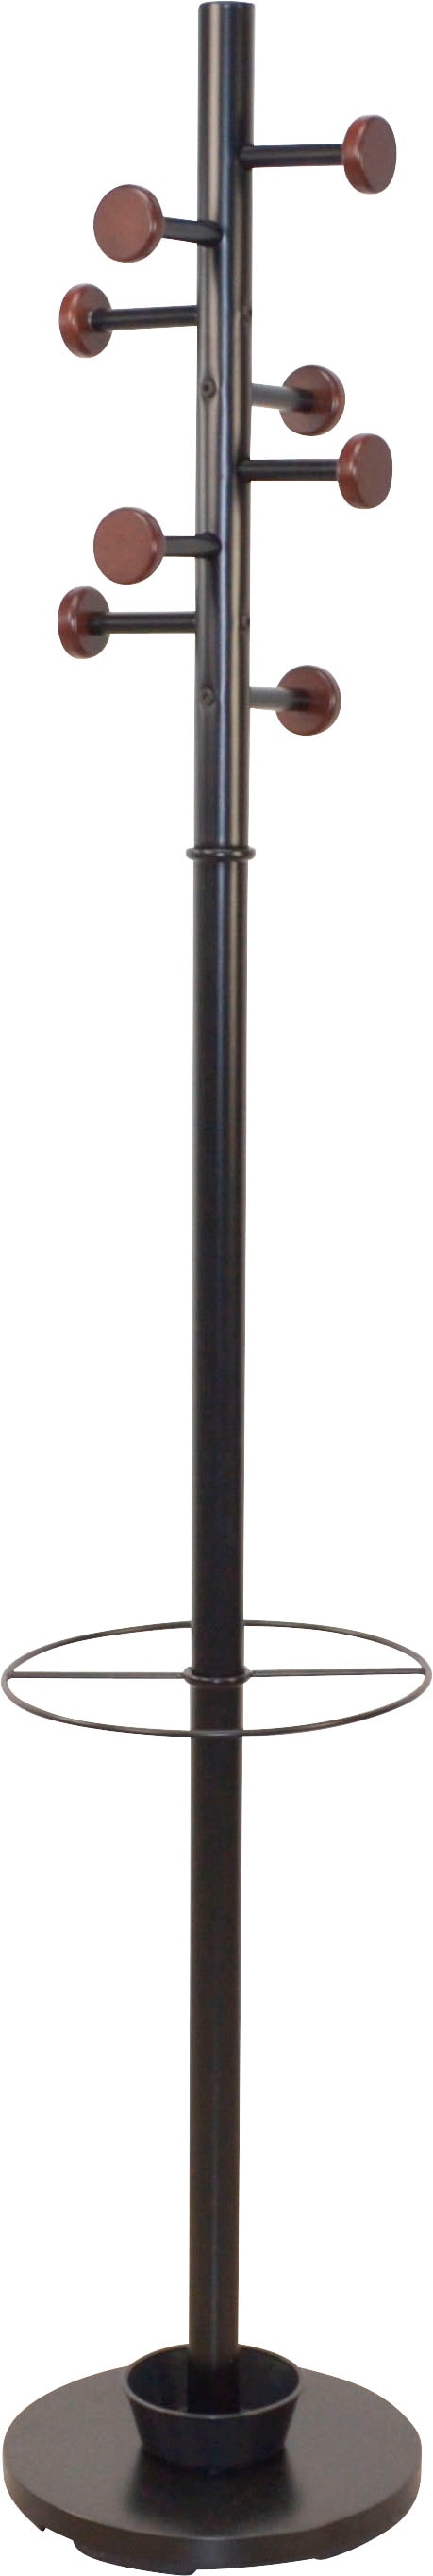 Garderobenständer, aus Metall, Höhe 172 cm, 8 Haken, mit Schirmhalter